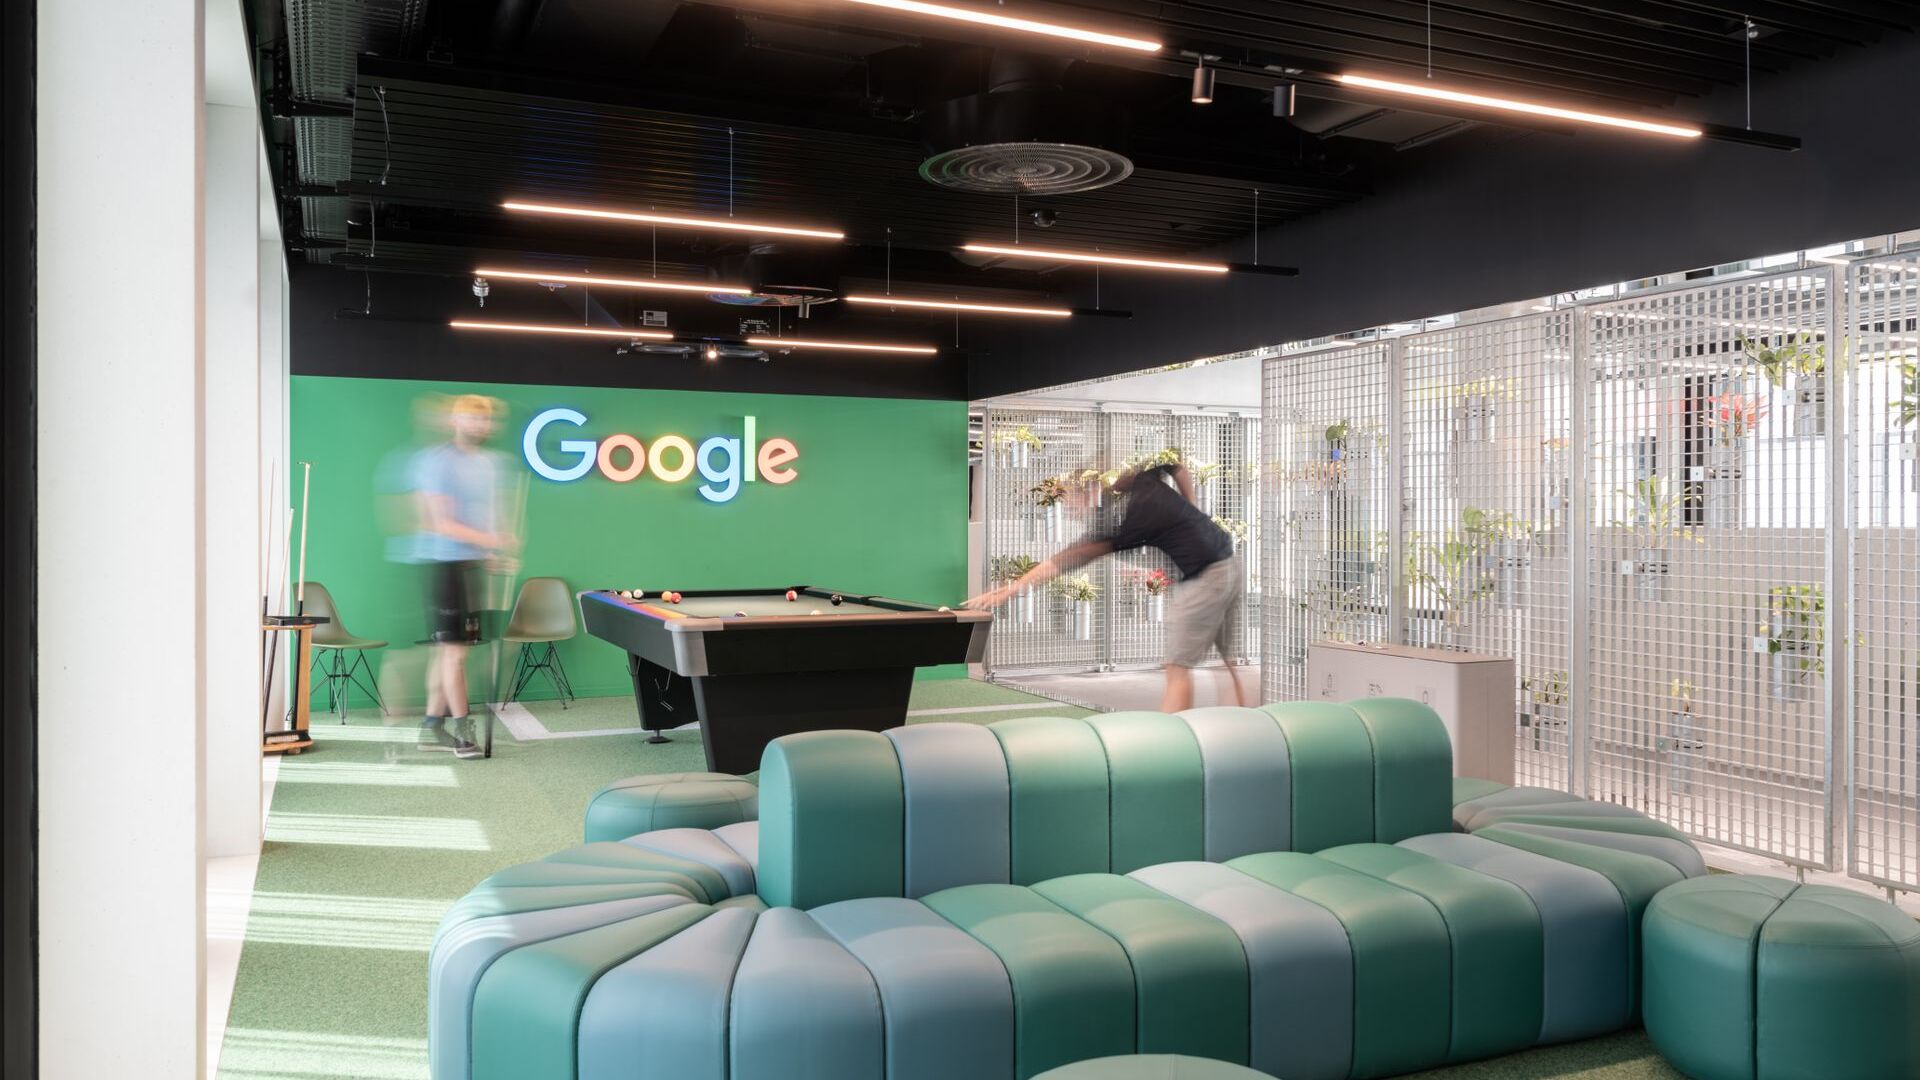 Google je 27. junija 2022 v prisotnosti Patricka Warnkinga, direktorja za državo Švica, otvoril Campus Europaallee A1 v Zürichu, največje raziskovalno in razvojno središče podjetja IT zunaj Združenih držav: sedež je na naslovu Kasernenstrasse 95, blizu glavne železniška postaja švicarske gospodarske prestolnice